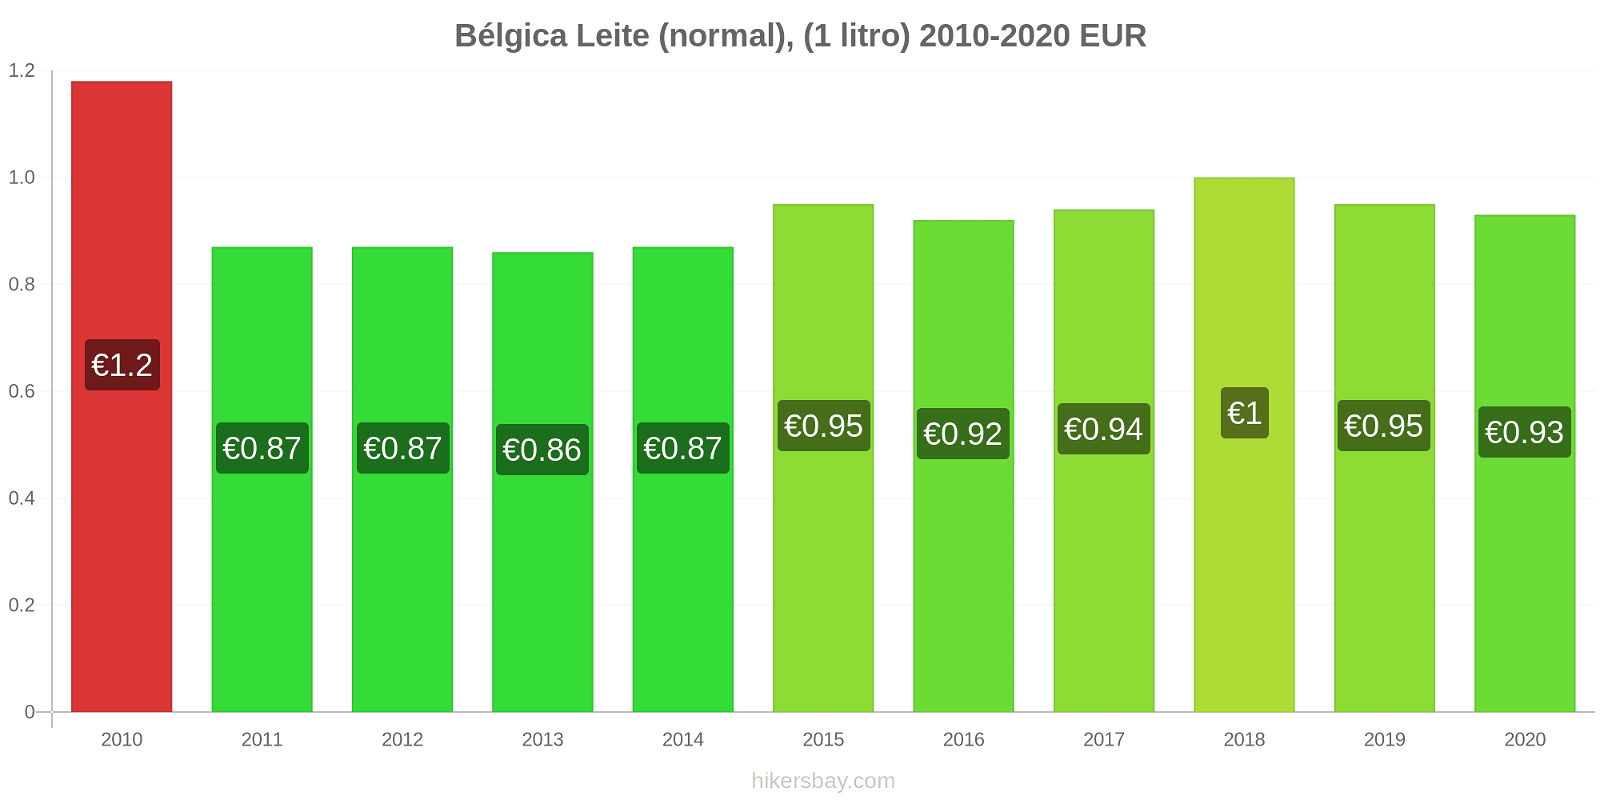 Bélgica variação de preço (Regular), leite (1 litro) hikersbay.com